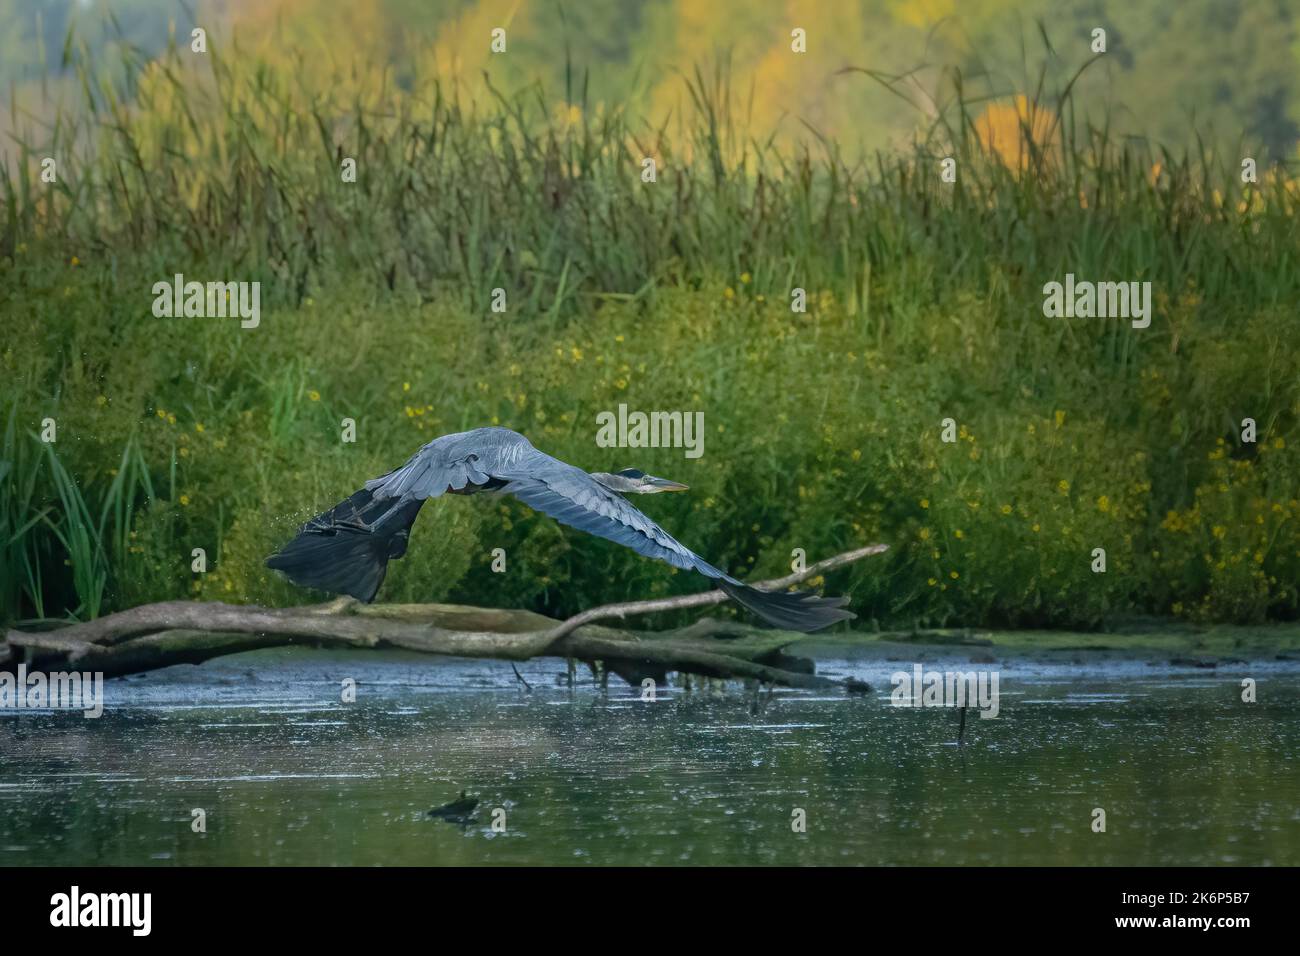 Un grande Heron blu pesca lungo la riva del fiume Kewaunee nella contea di Kewaunee Wisconsin. Queste immagini sono state scattate durante il kayak lungo il fiume. Foto Stock